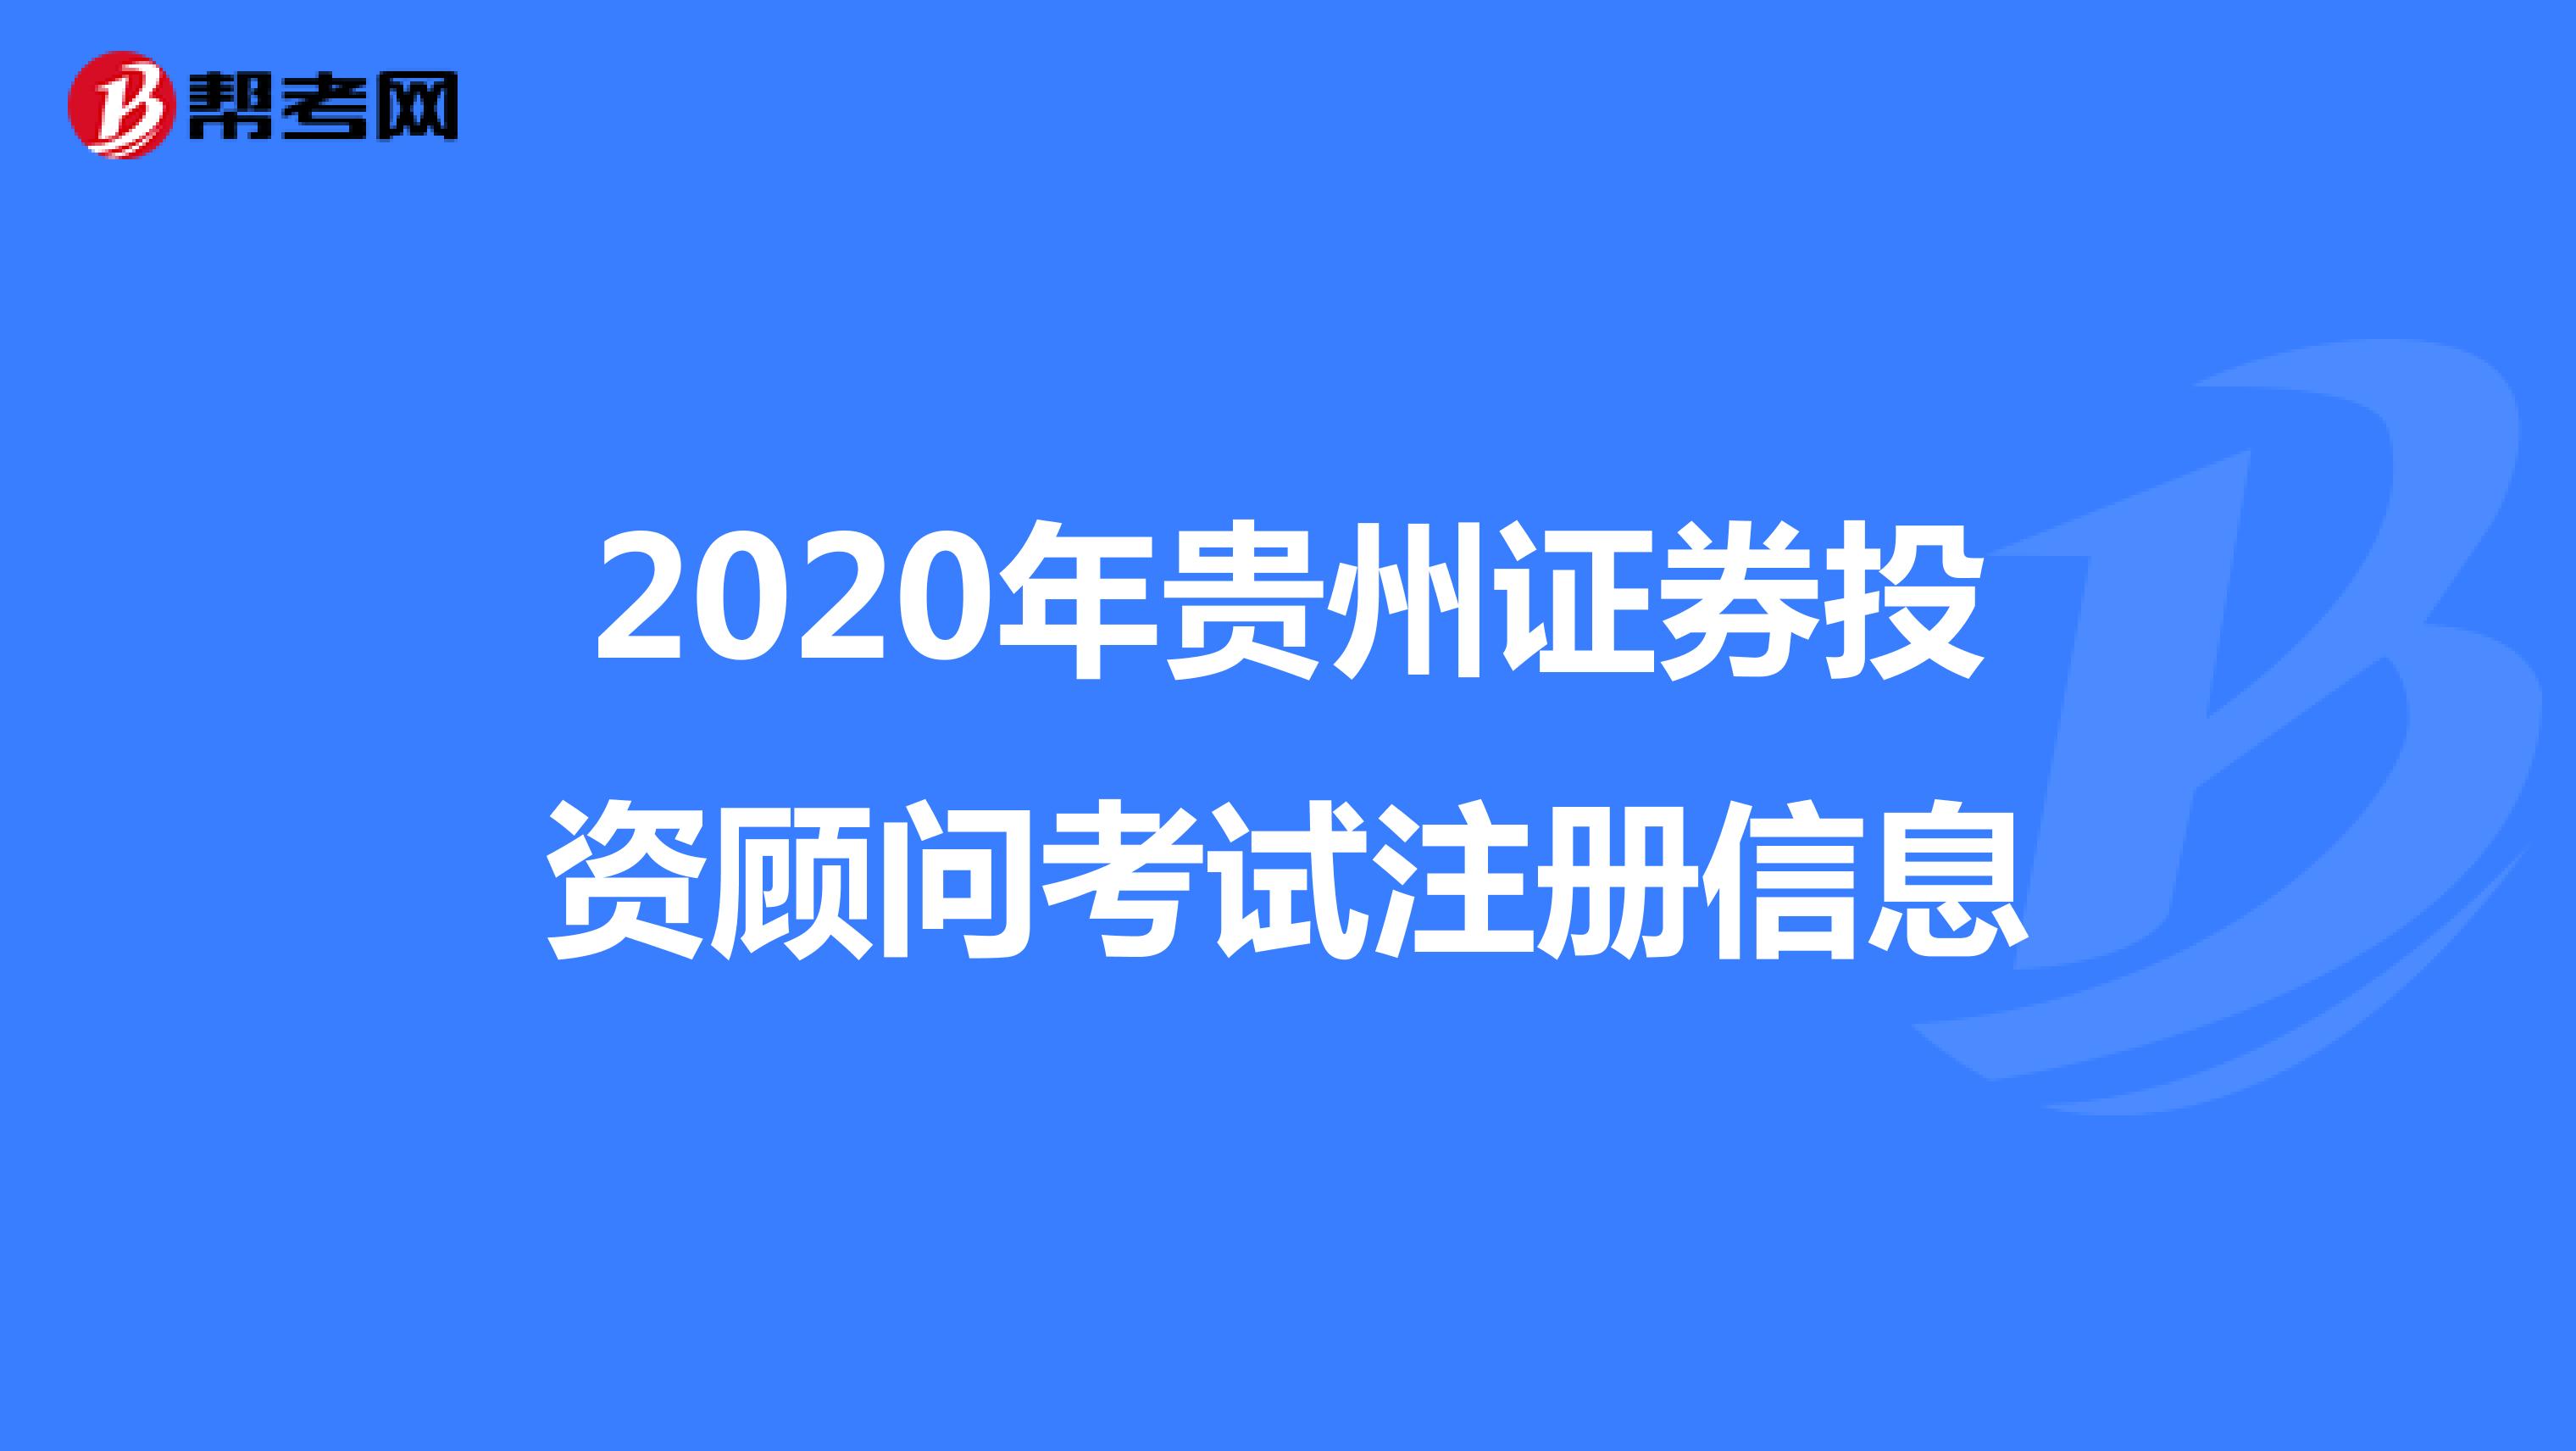 2020年贵州证券投资顾问考试注册信息